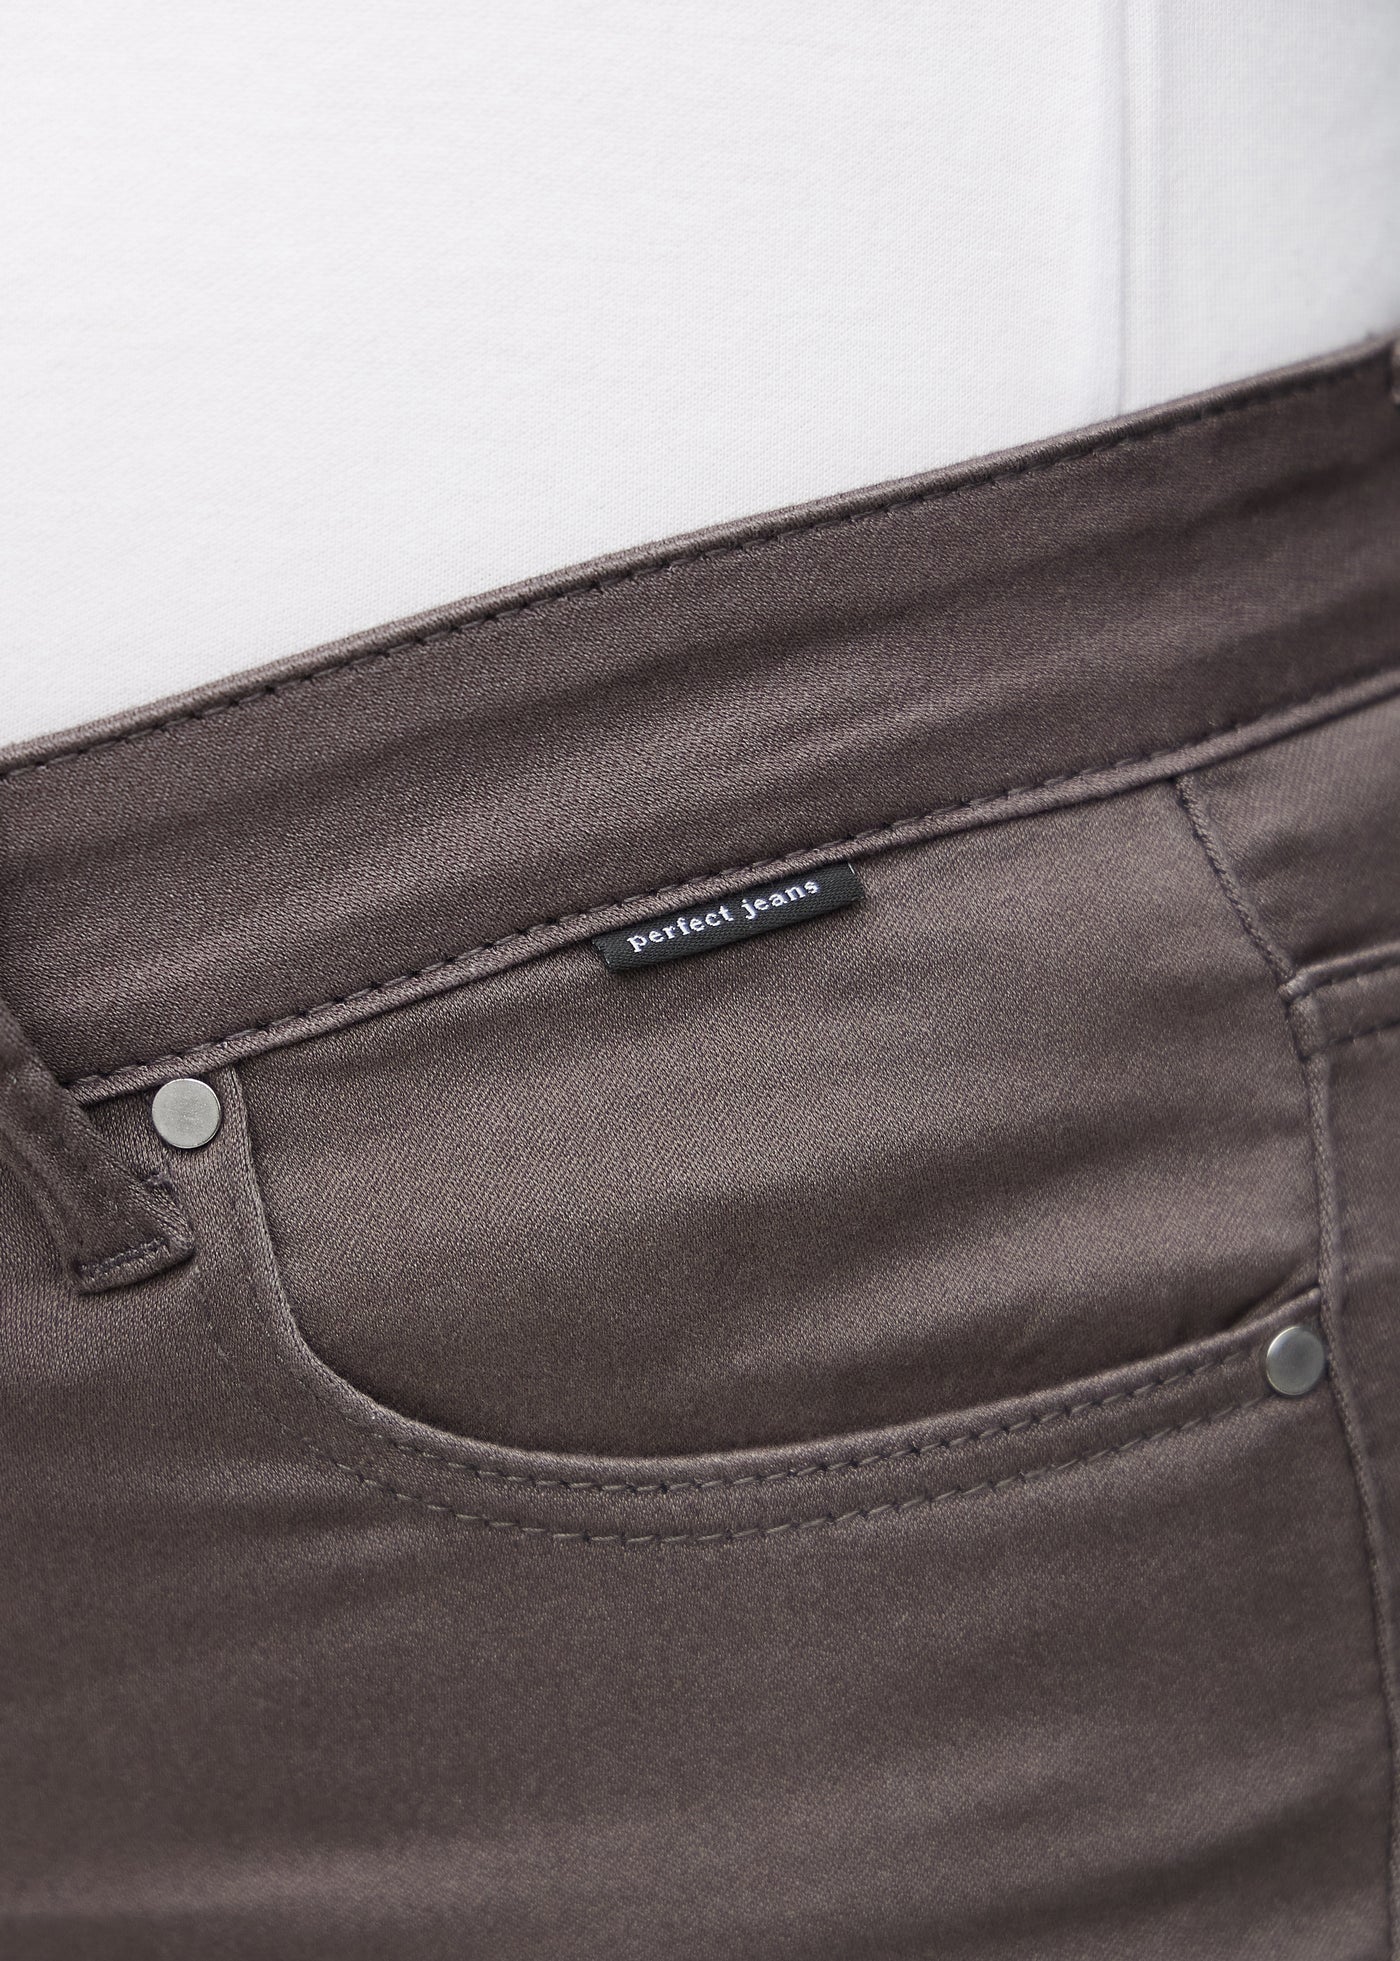 Forlommen på et par gråbrune jeans, hvor man kan se logoet på en plus-size model.